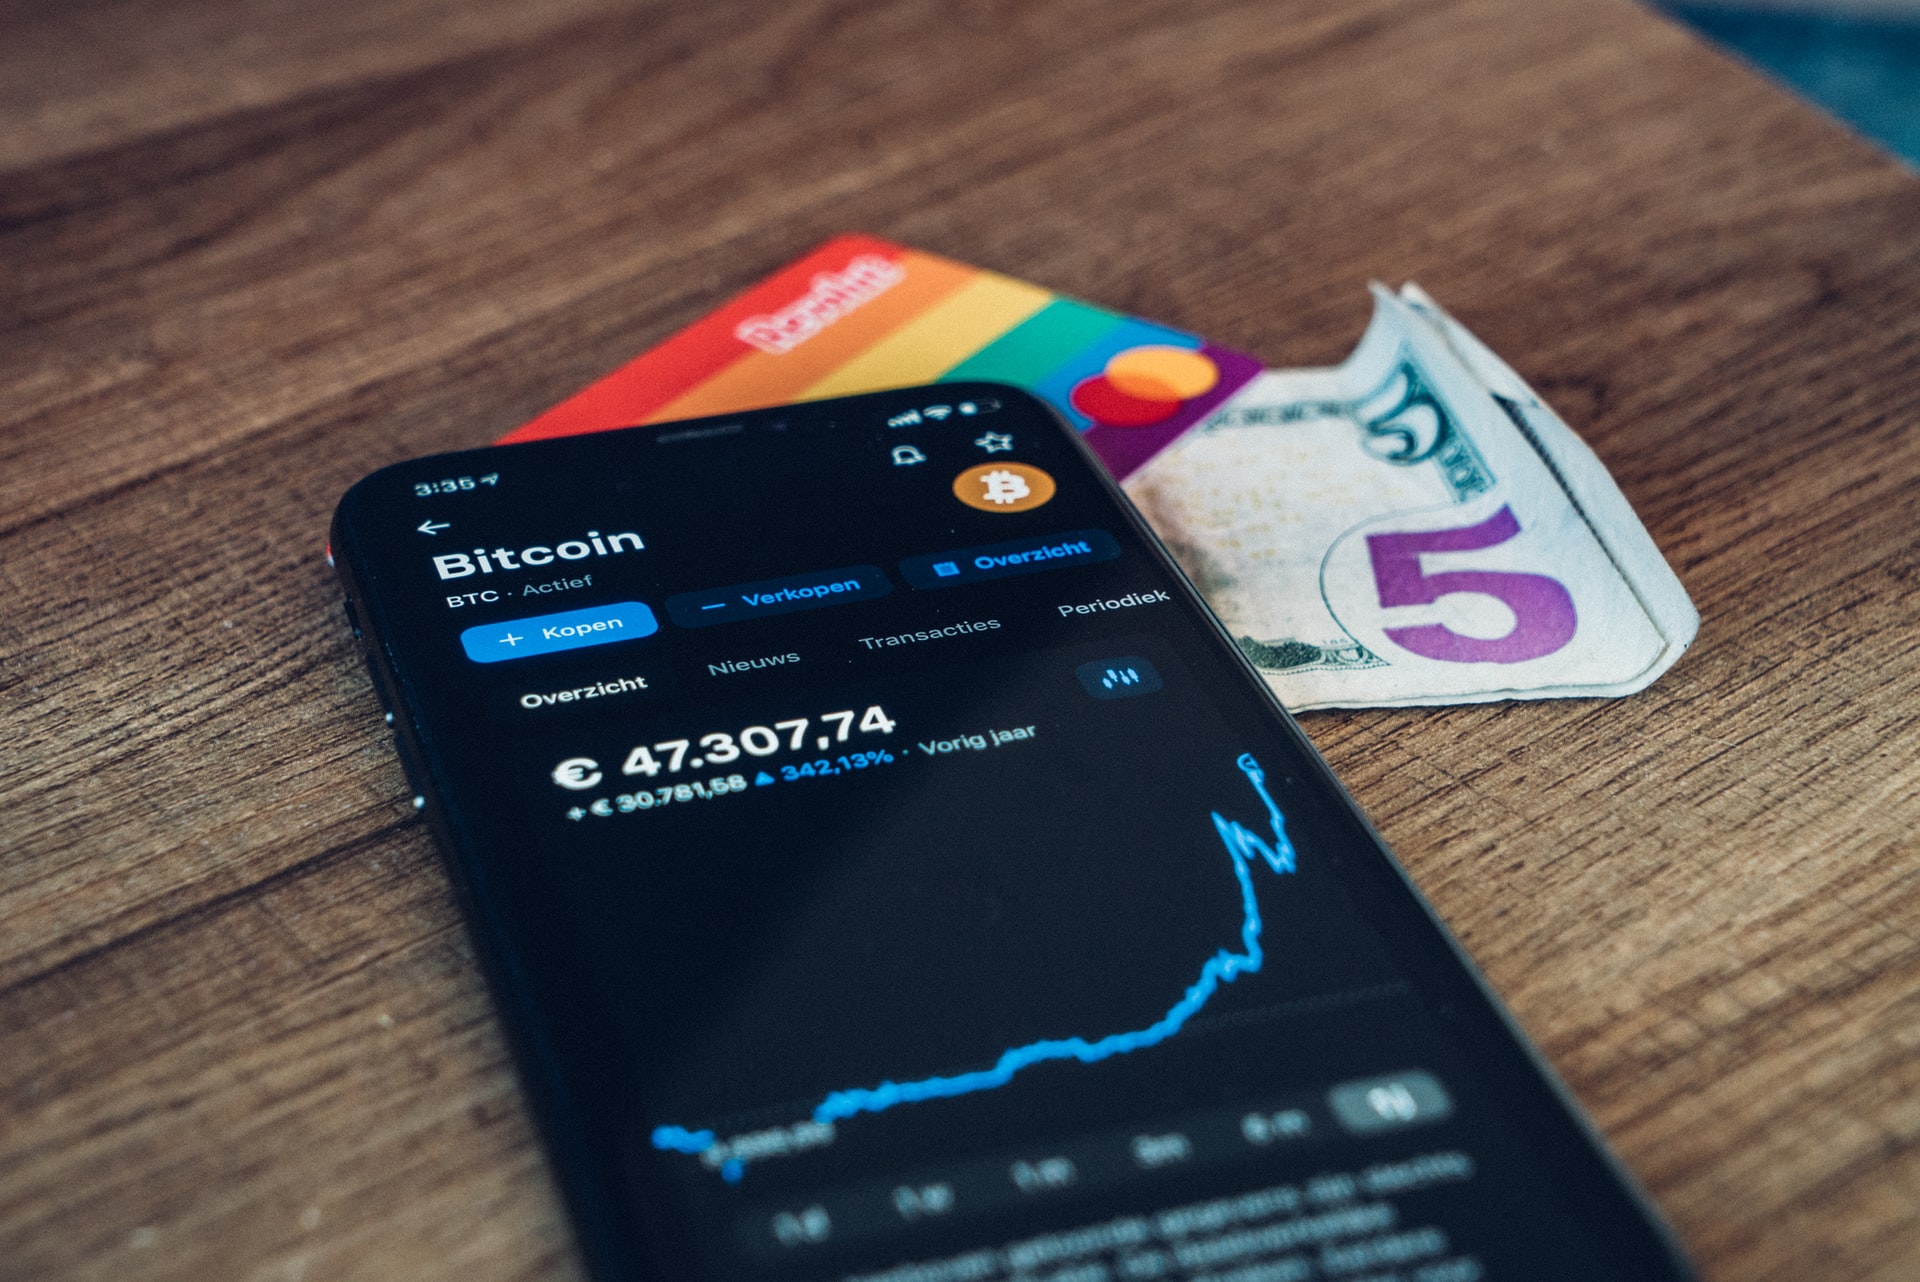 Sweden Settles Debt via Bitcoin